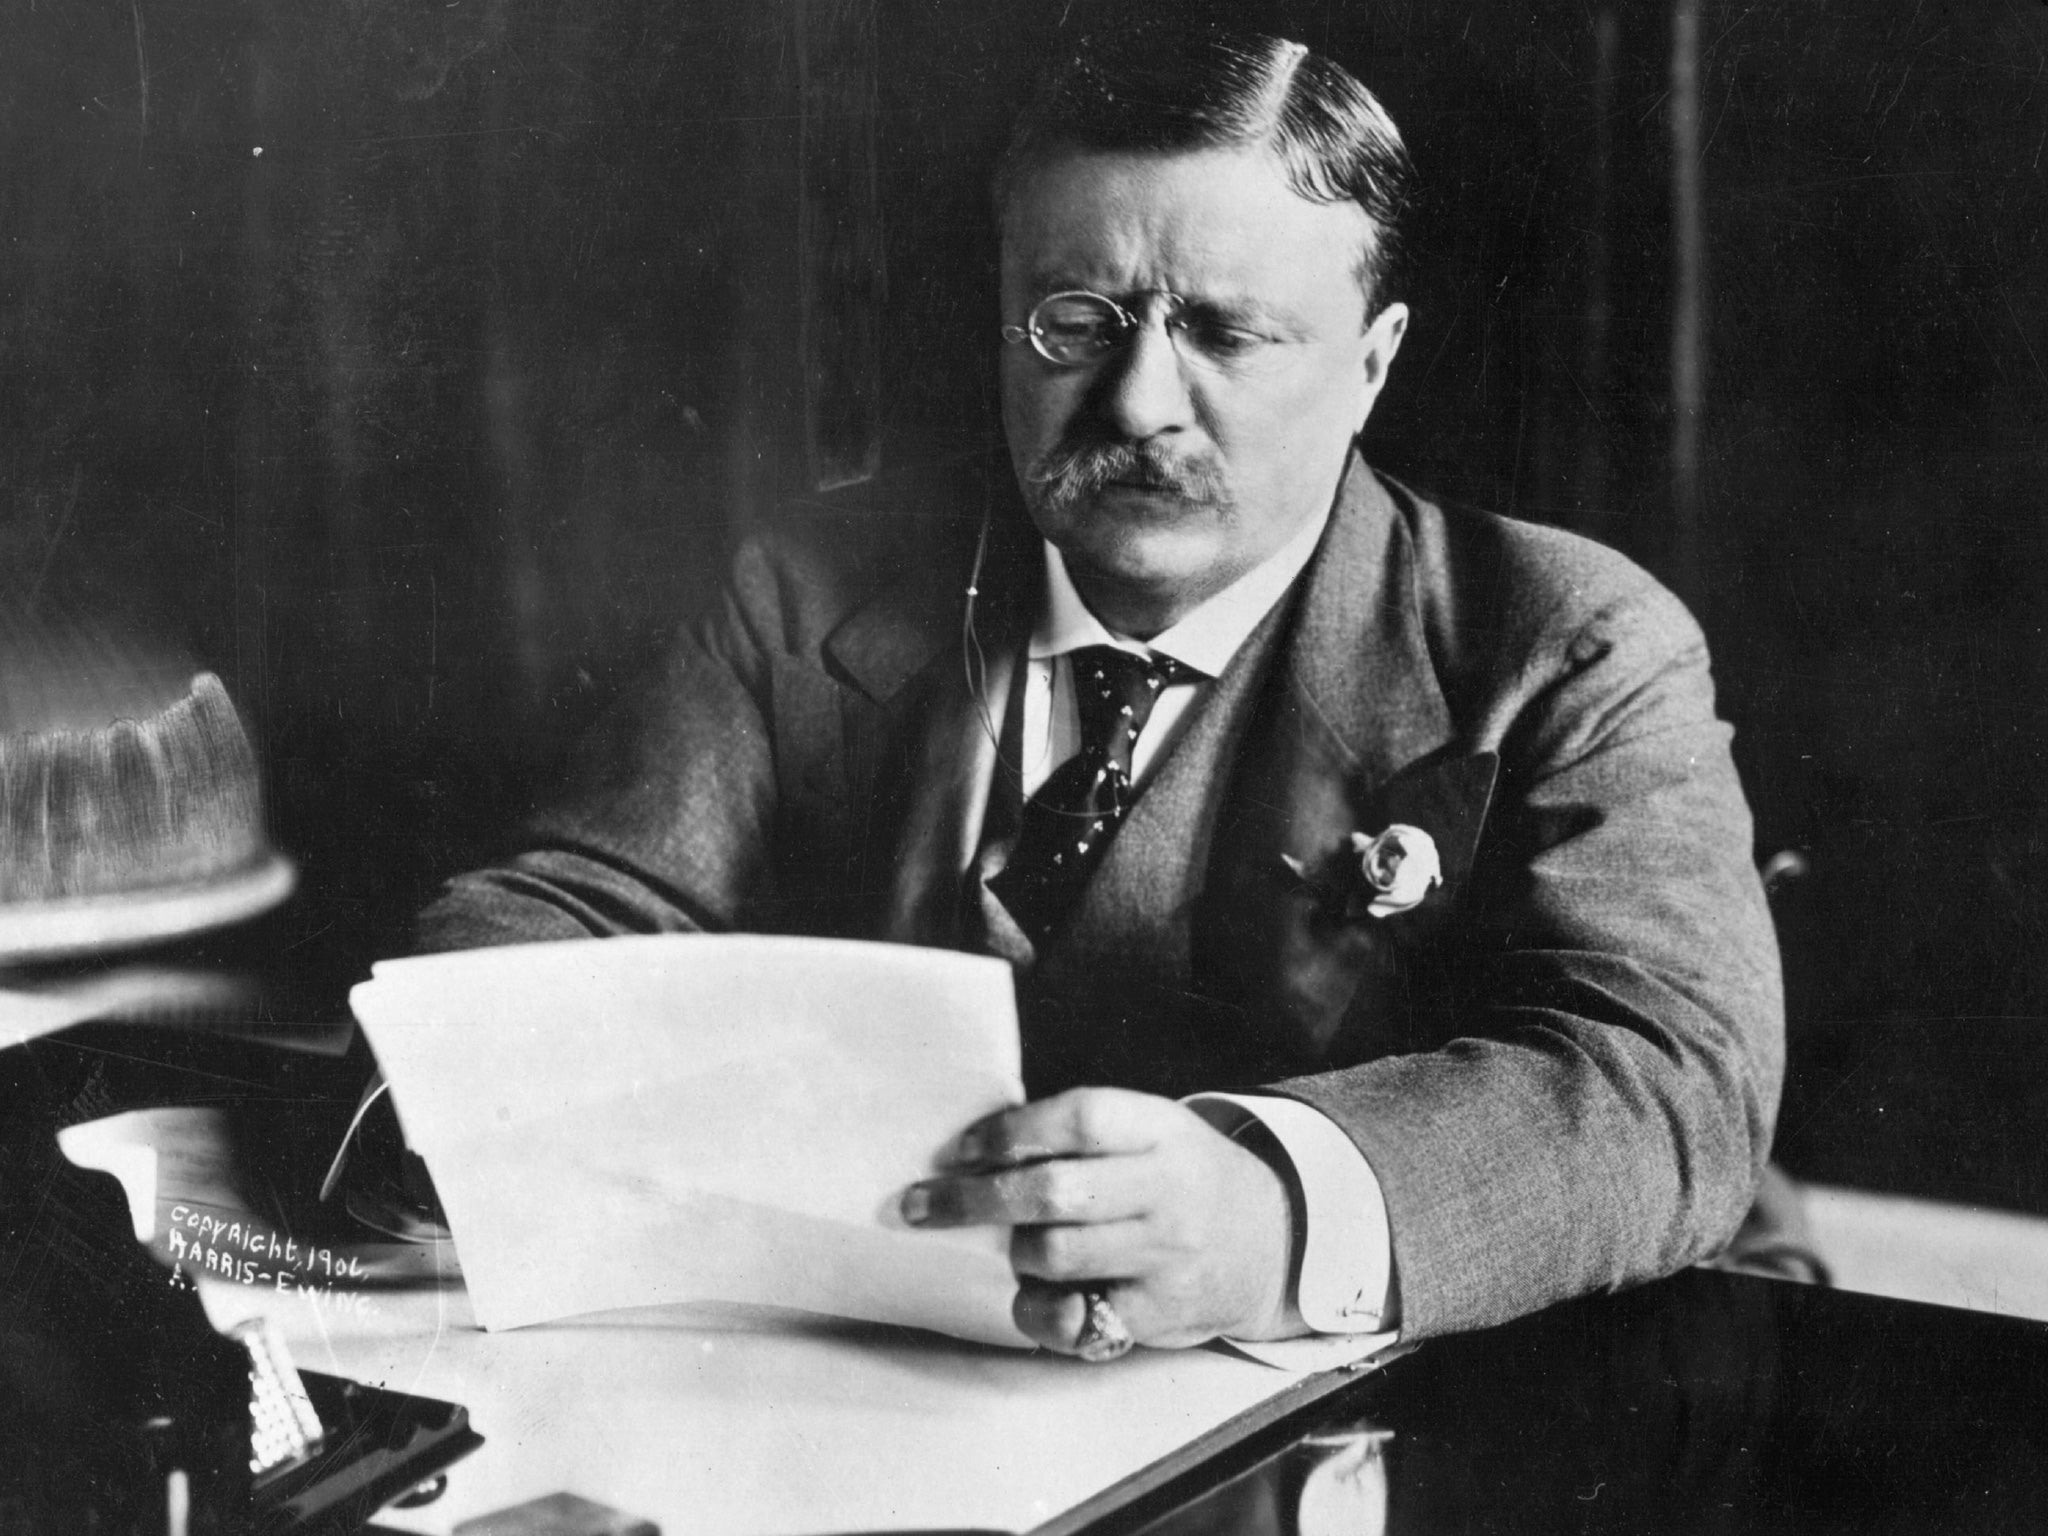 Roosevelt broke up John D Rockefeller's Standard Oil empire in 1911